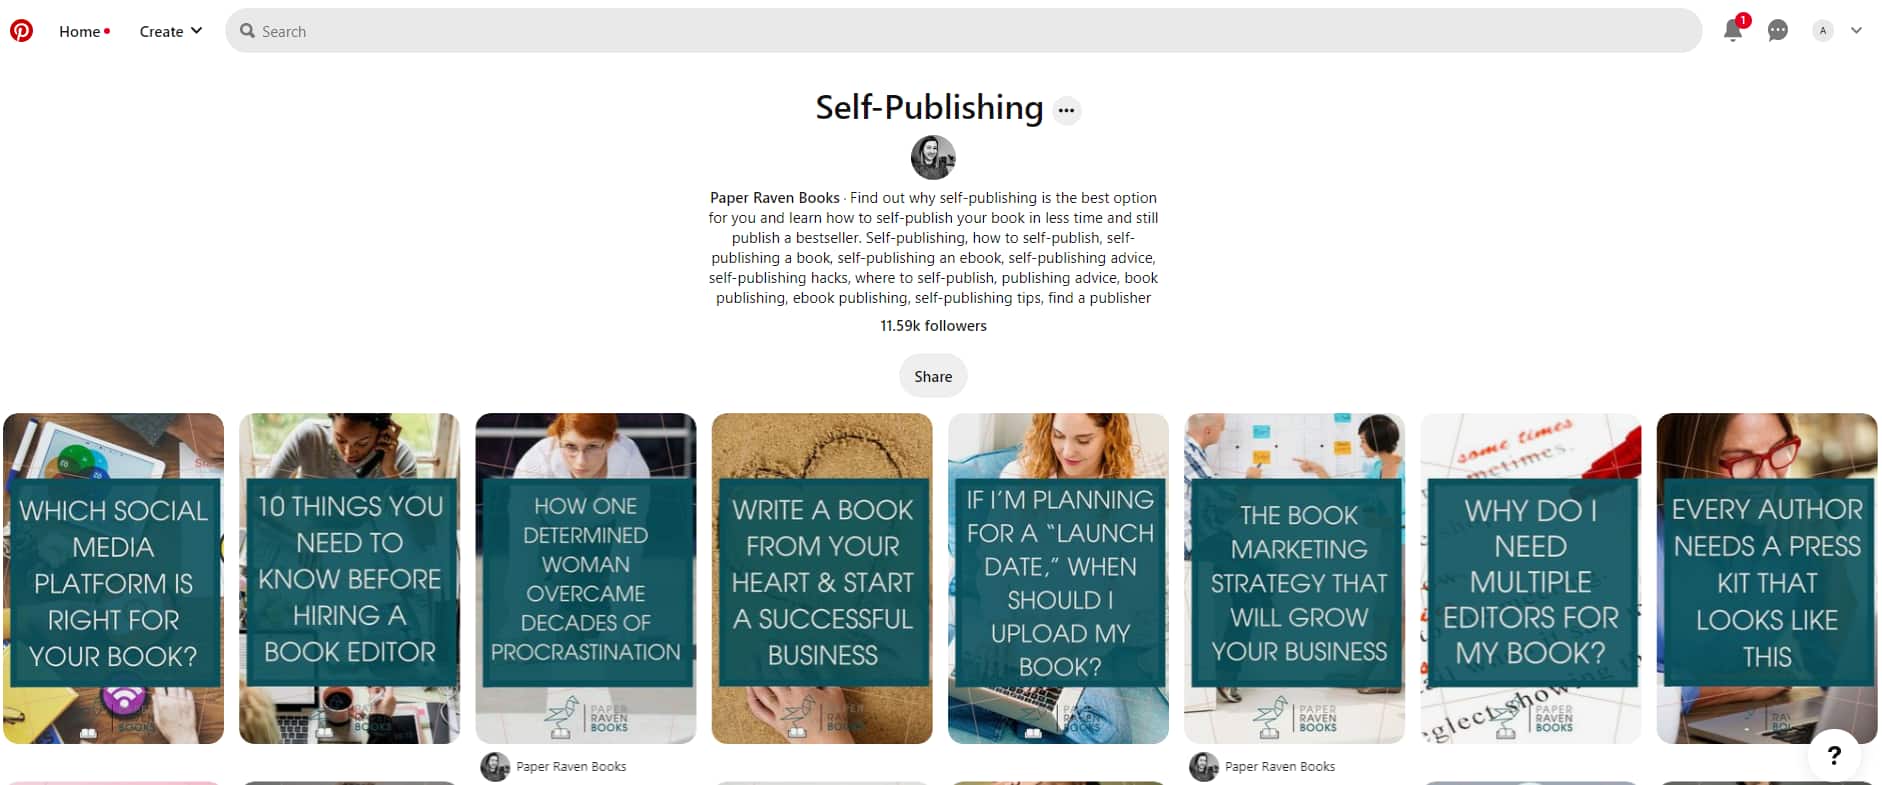 pinterest board on self publishing